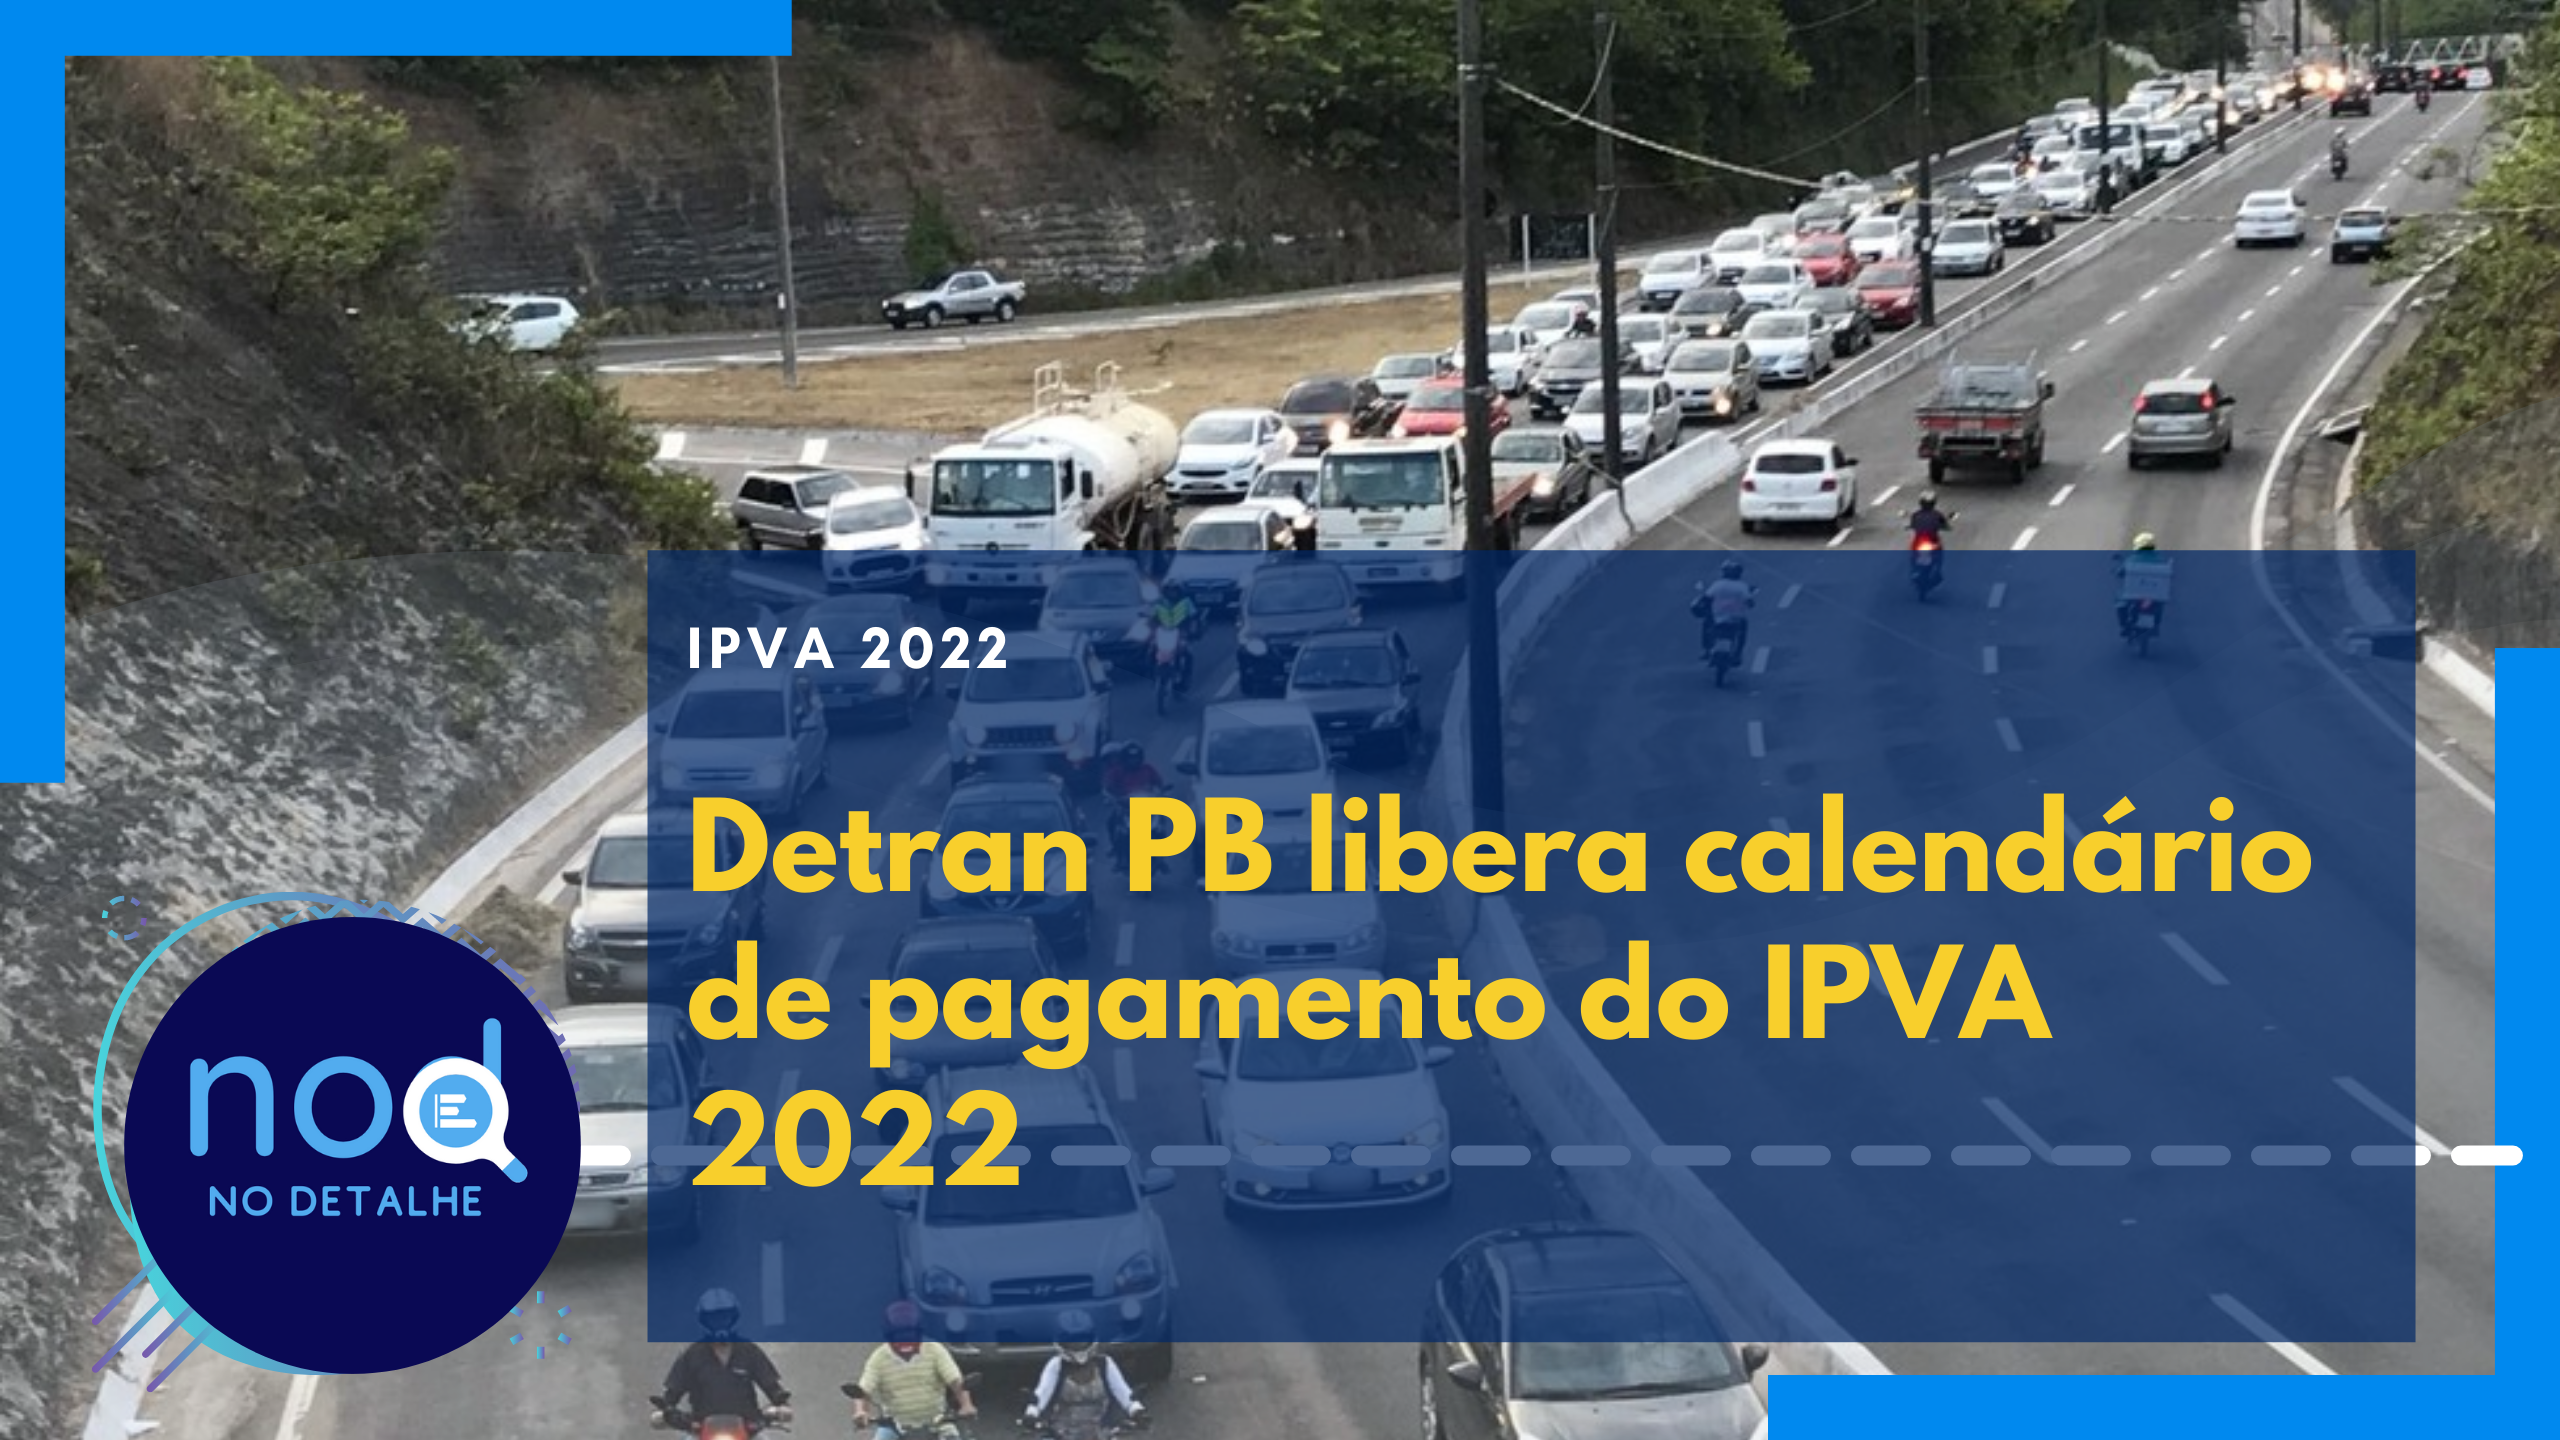 Detran PB libera calendário de pagamento do IPVA 2022